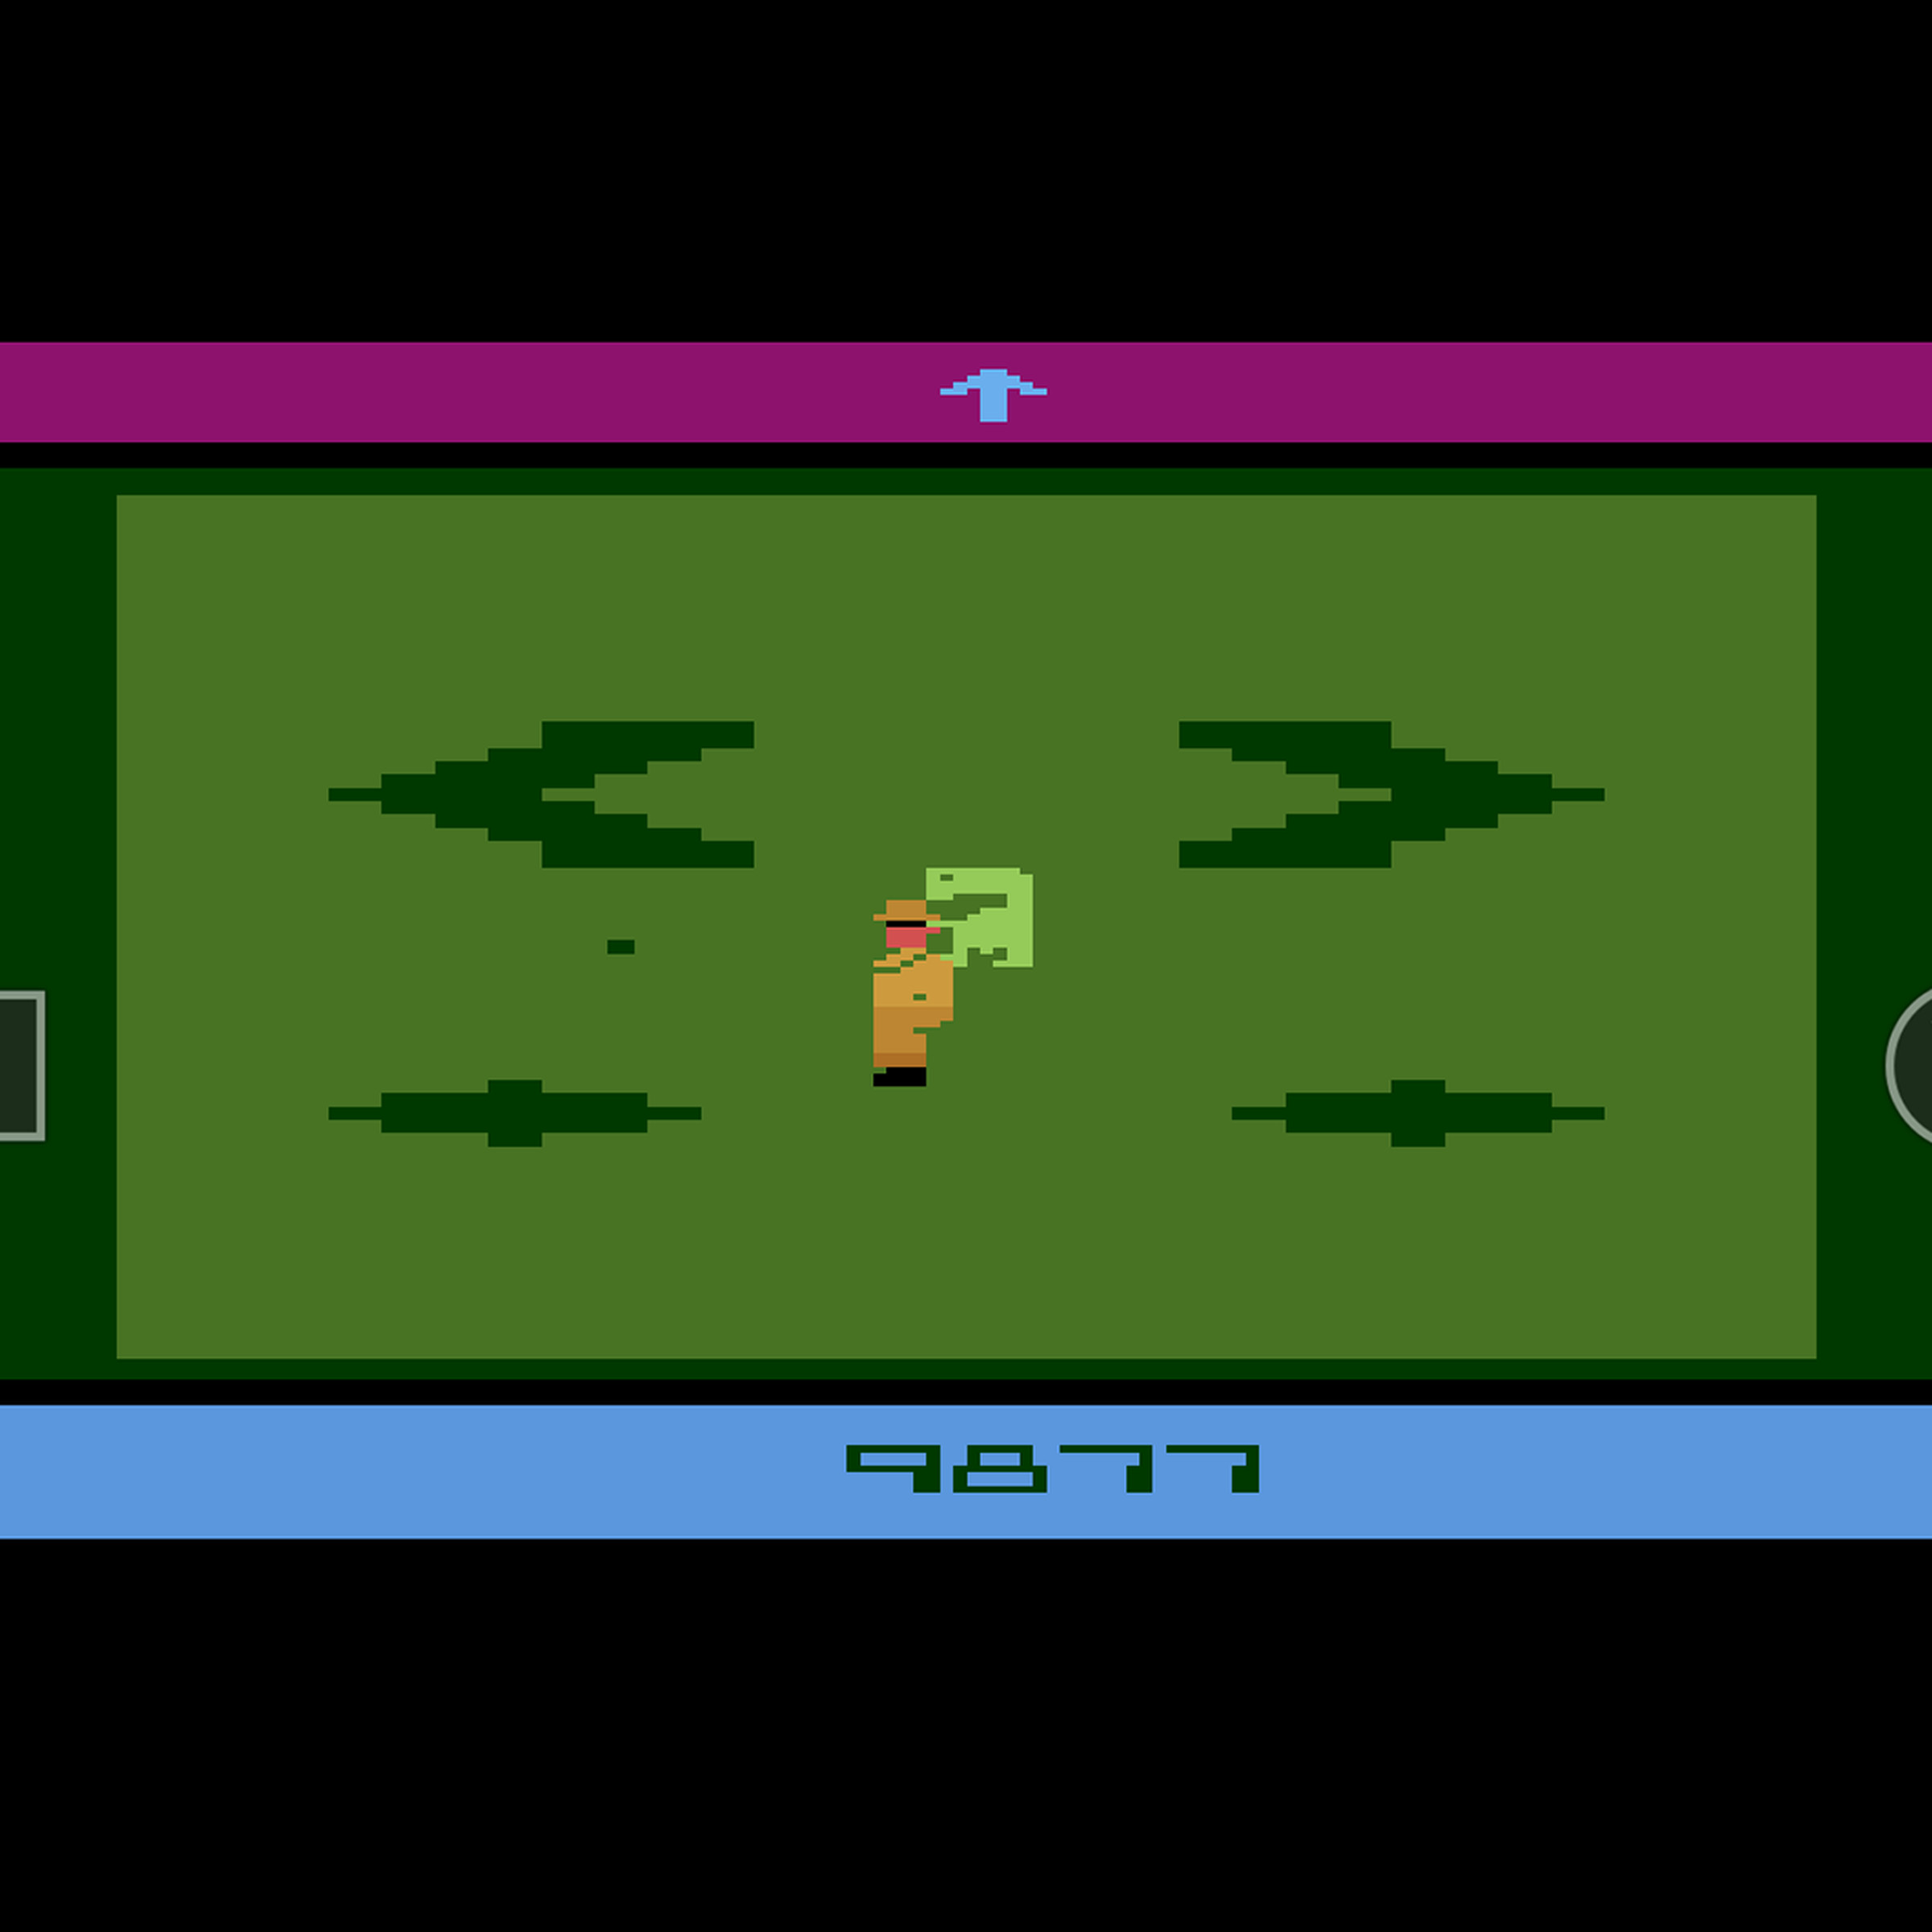 A screenshot of a game running in RetroArch.